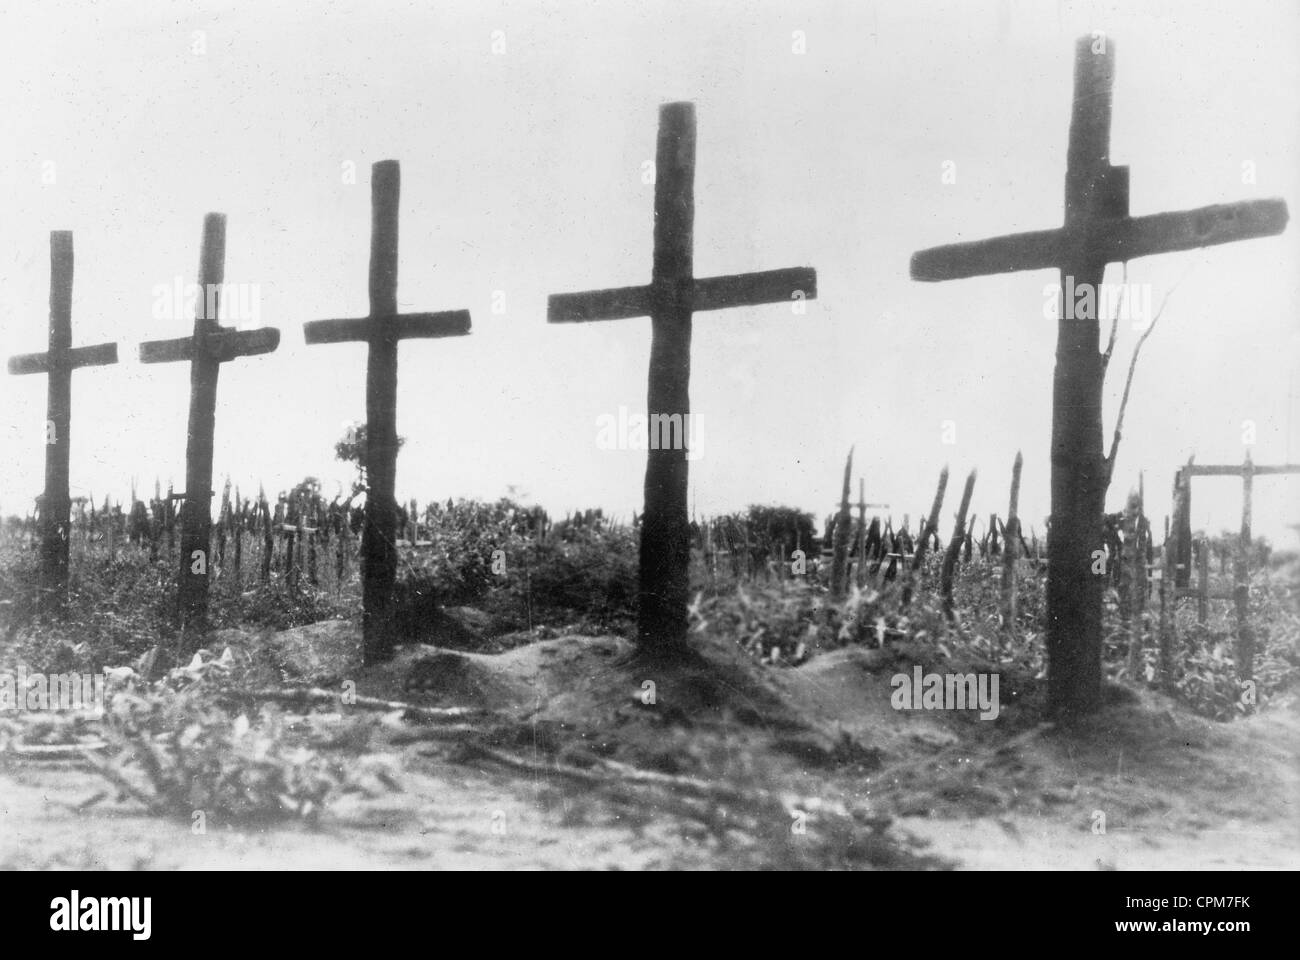 Cementerio militar boliviano de la Guerra del Chaco, 1934 Foto de stock